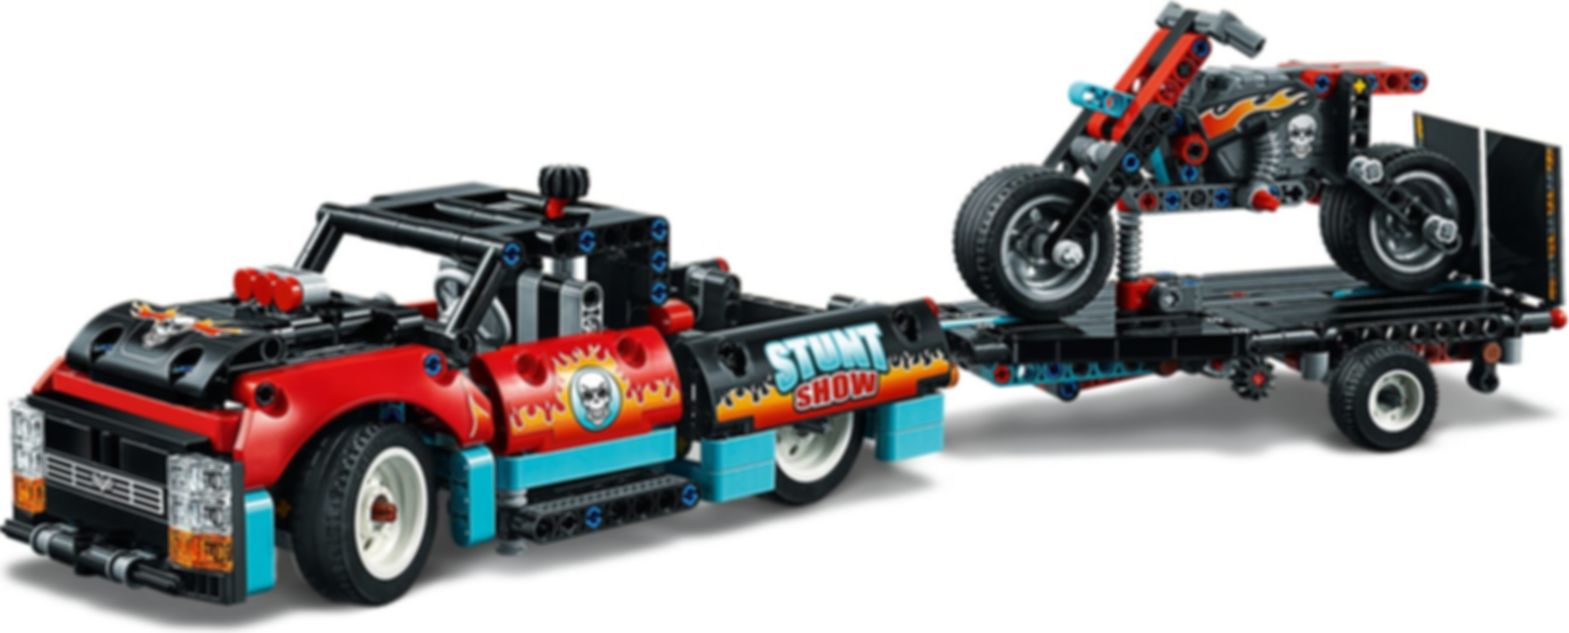 LEGO® Technic Stunt-Show mit Truck und Motorrad spielablauf